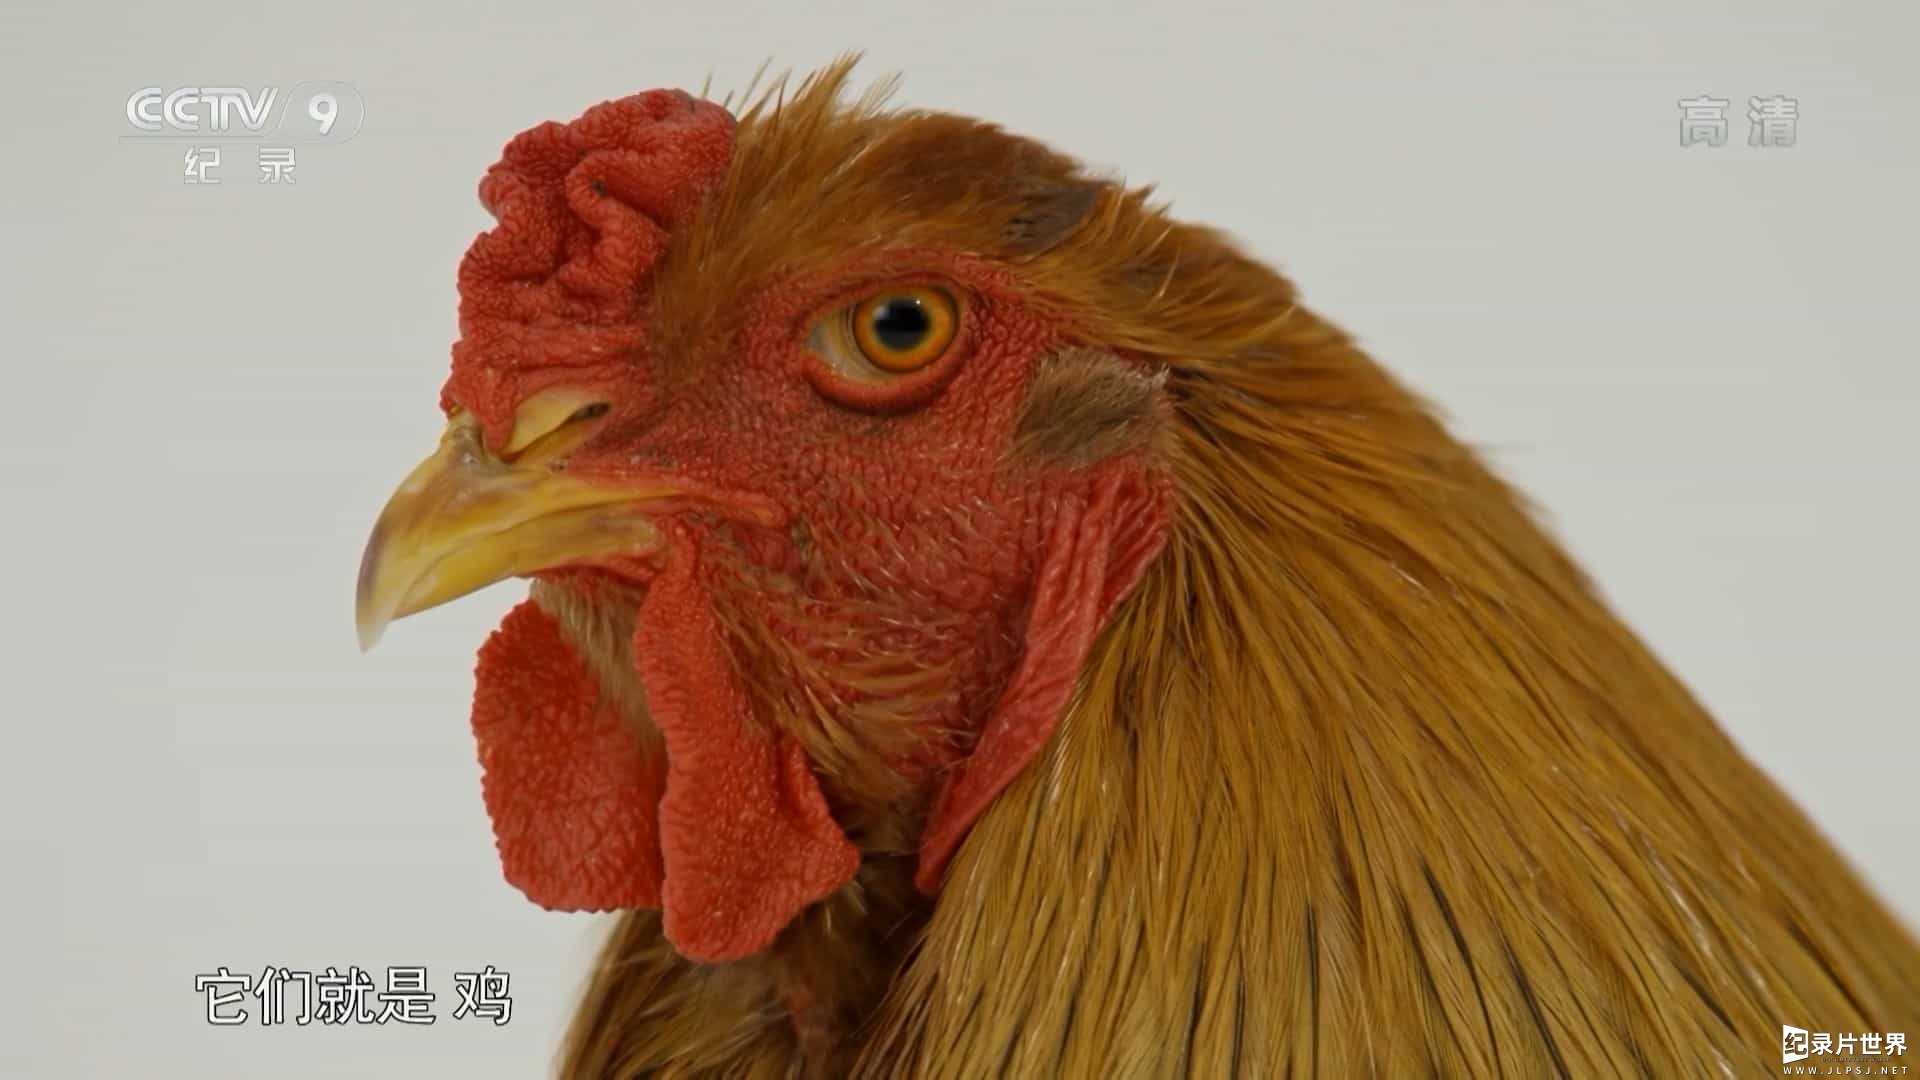 央视纪录片《鸡鸣星球 Chicken Planet 2015》全1集 